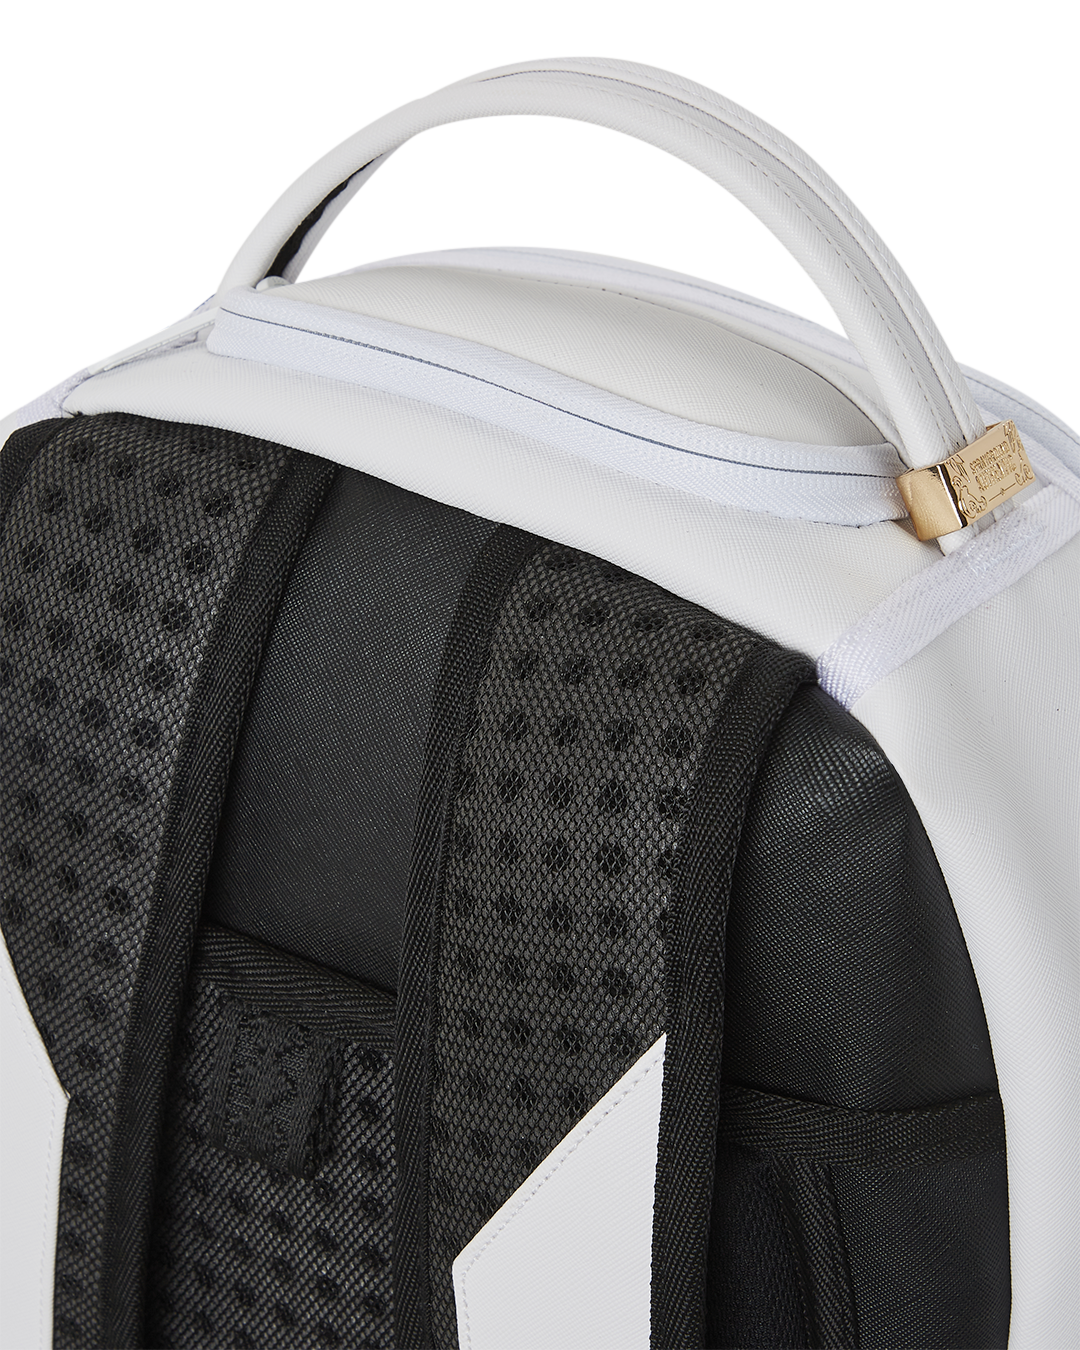 SPRAYGROUND SHARK CENTRAL (WHT) backpack 910B5489NSZ white